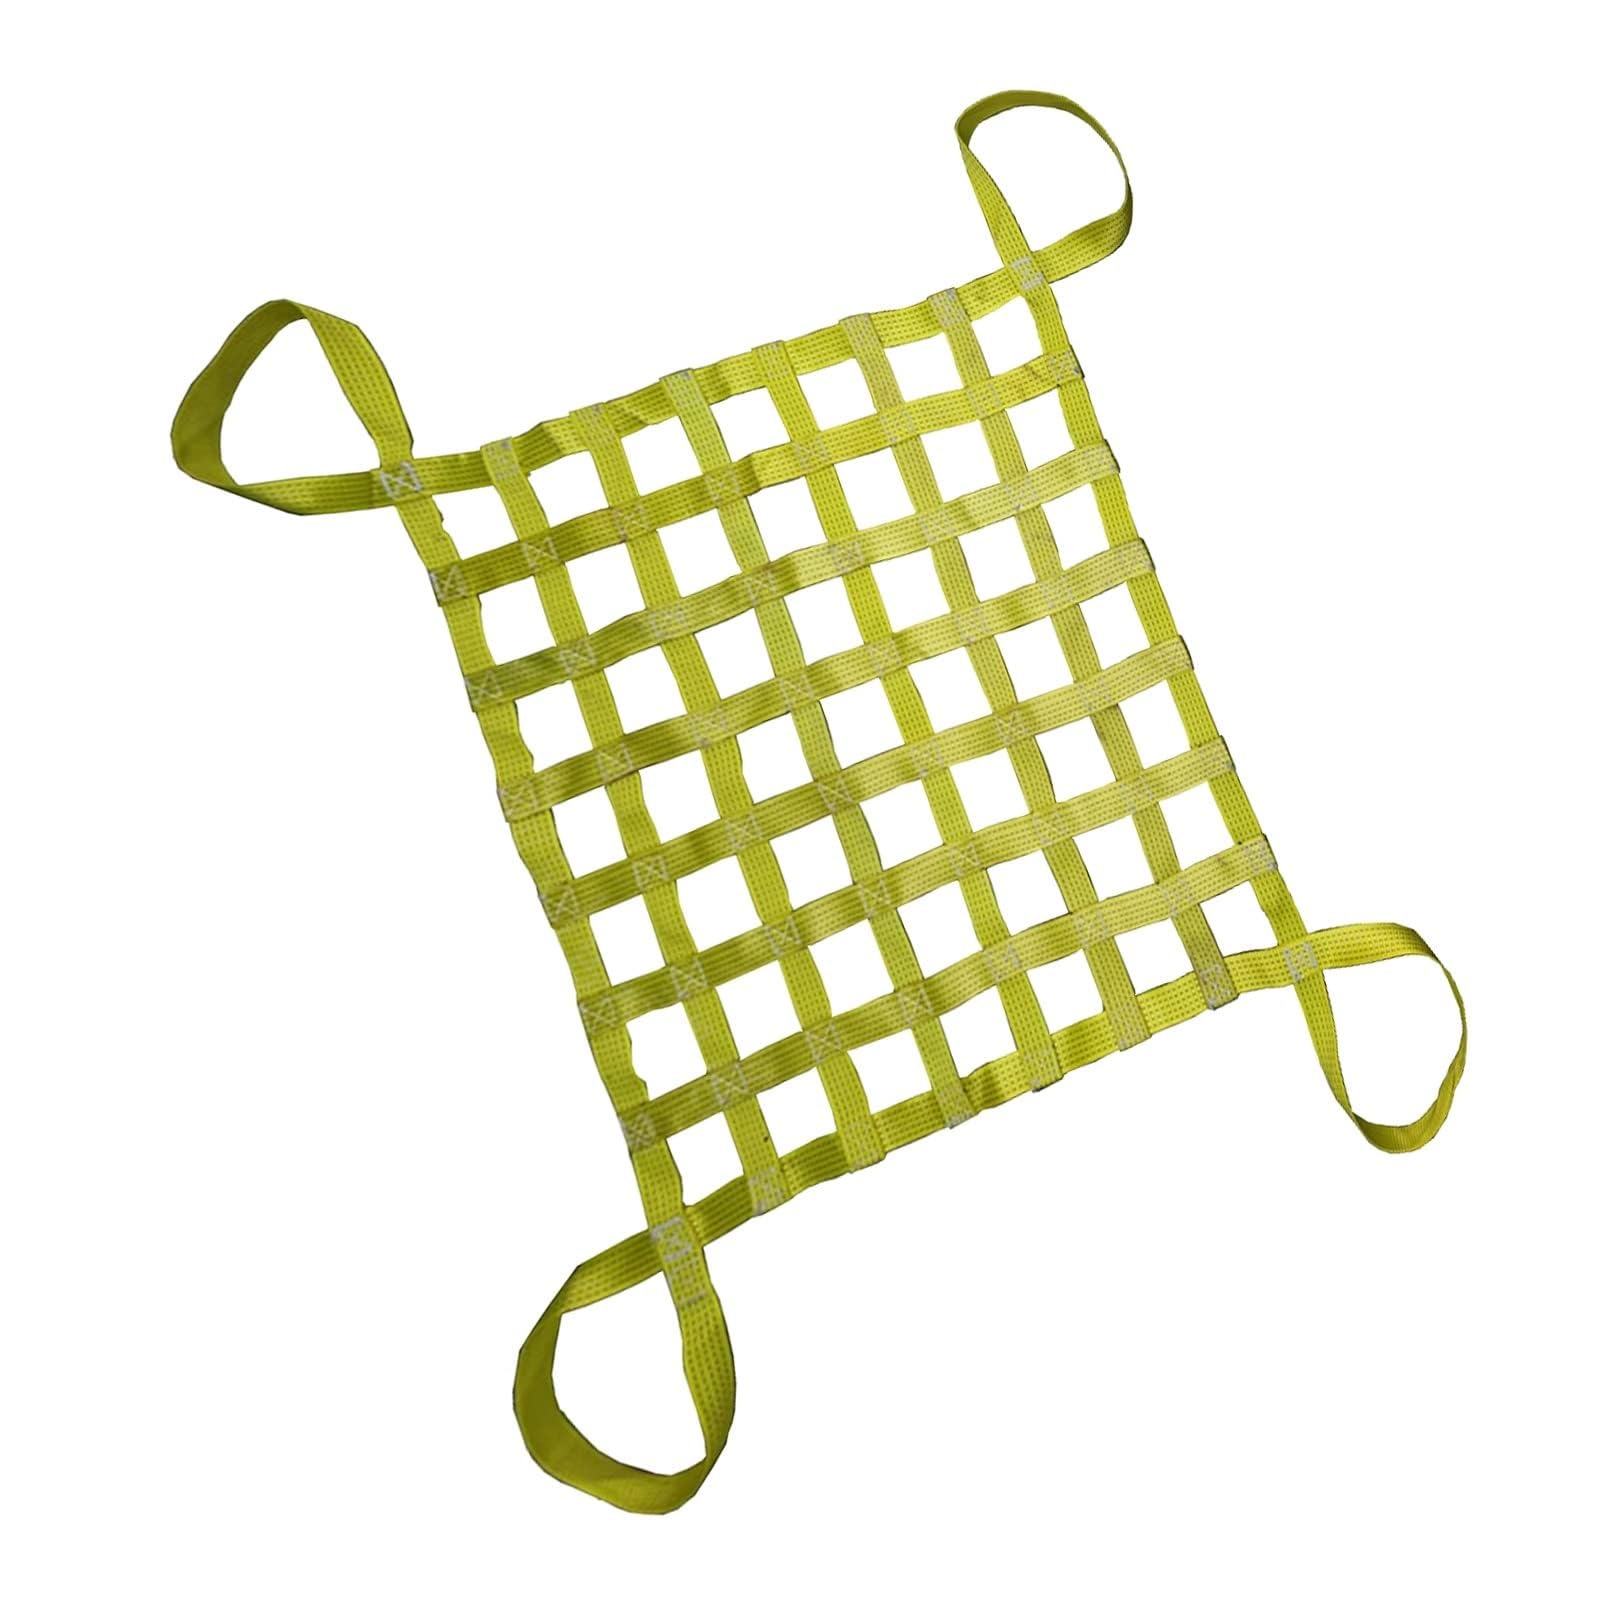 Cargo Hebenetz – Polyester Cargo Hanging Net, Sling Net, Load 0.3-3.5T Lifting Bag, Be- und Entladen Garten Hebenetz Gurte Handling Straps, Outdoor Klettern Sicherheitsnetz (eine Farbe 1,5 x 1,5 cm) von WYRMB